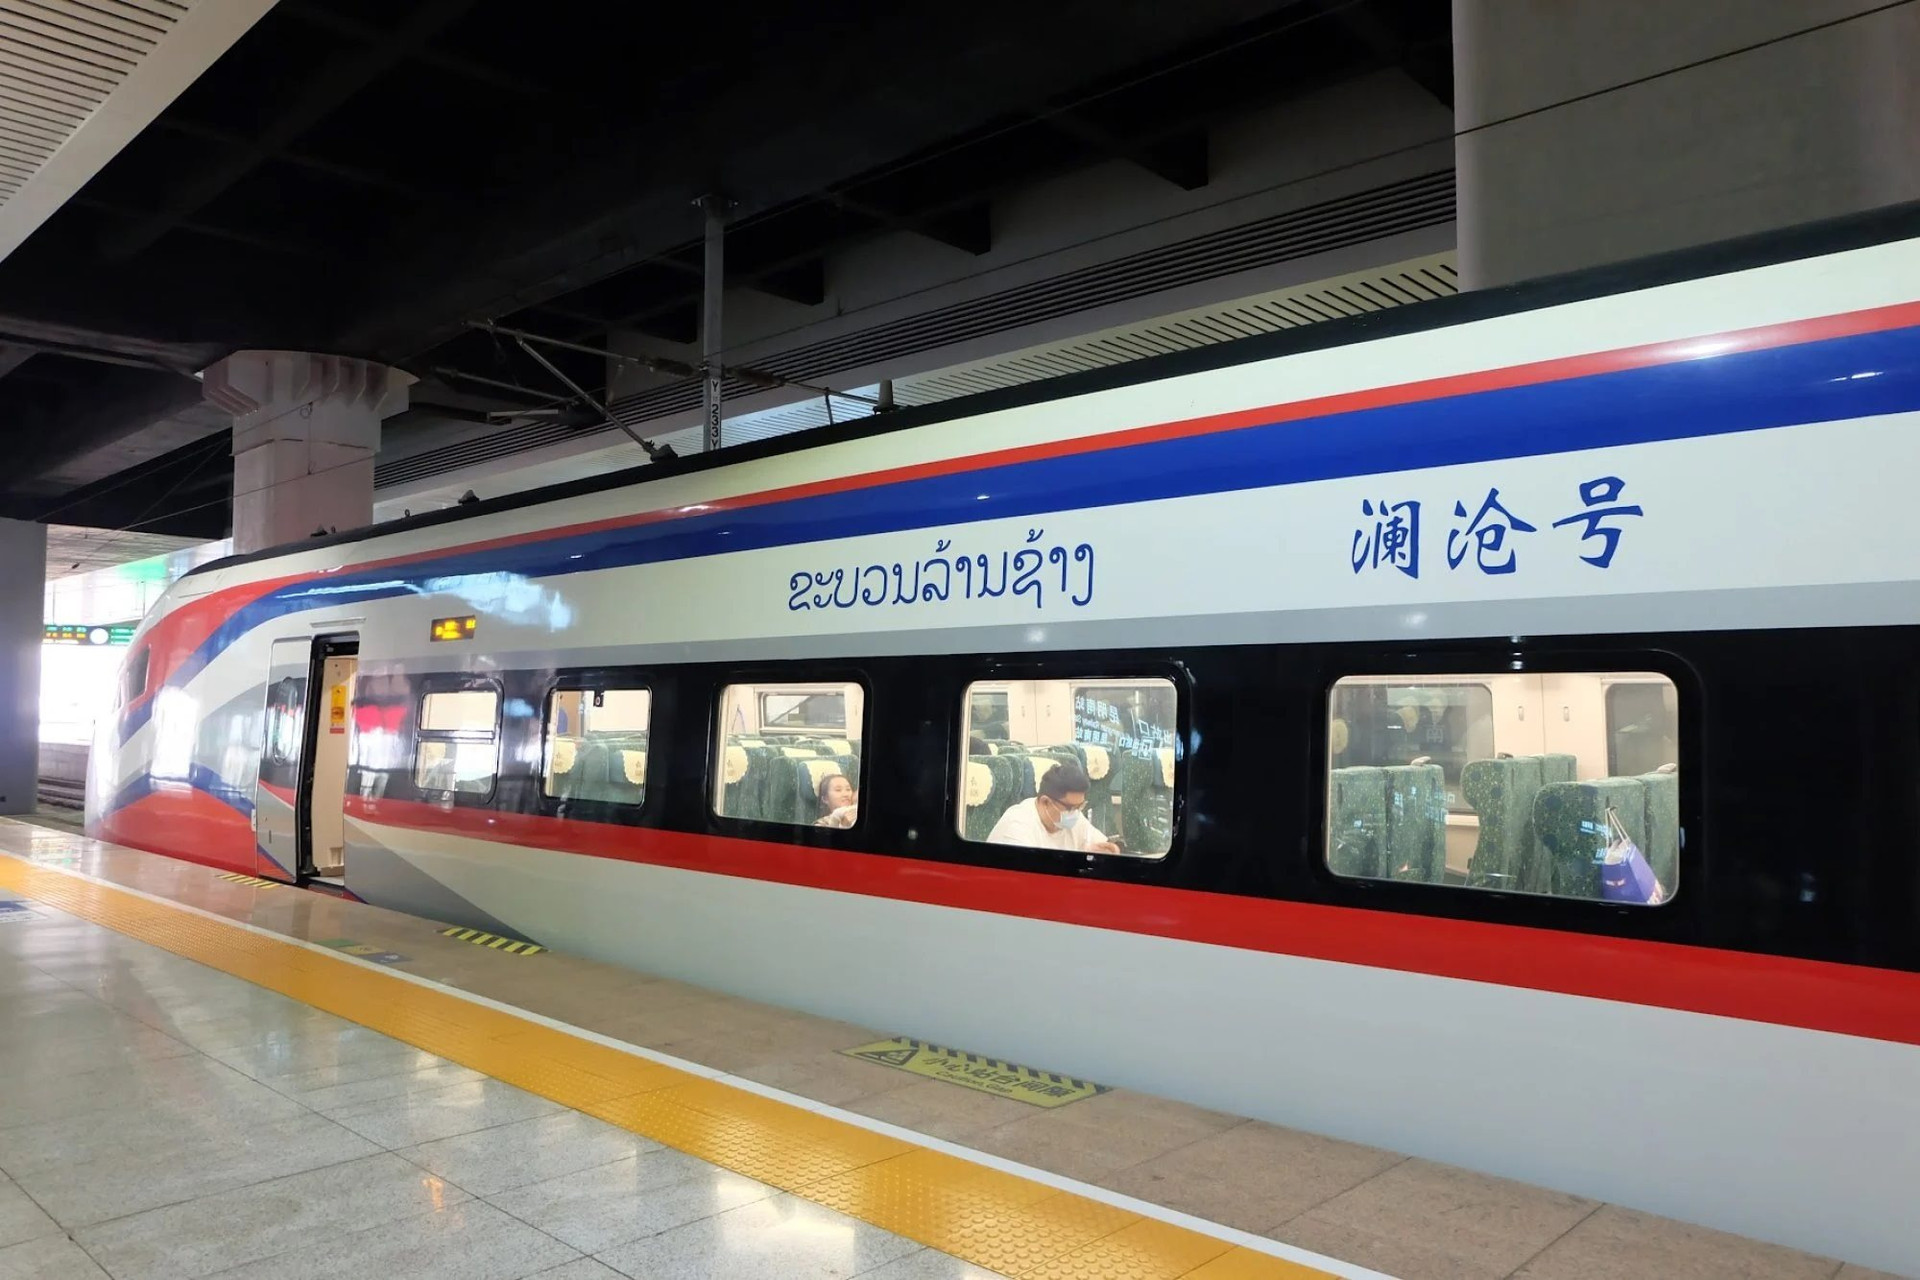 "Ngoại giao đường sắt" của Trung Quốc phát huy tác dụng: Những chuyến tàu xuyên vùng hẻo lánh, mang tới niềm hy vọng của phồn thịnh - Ảnh 2.